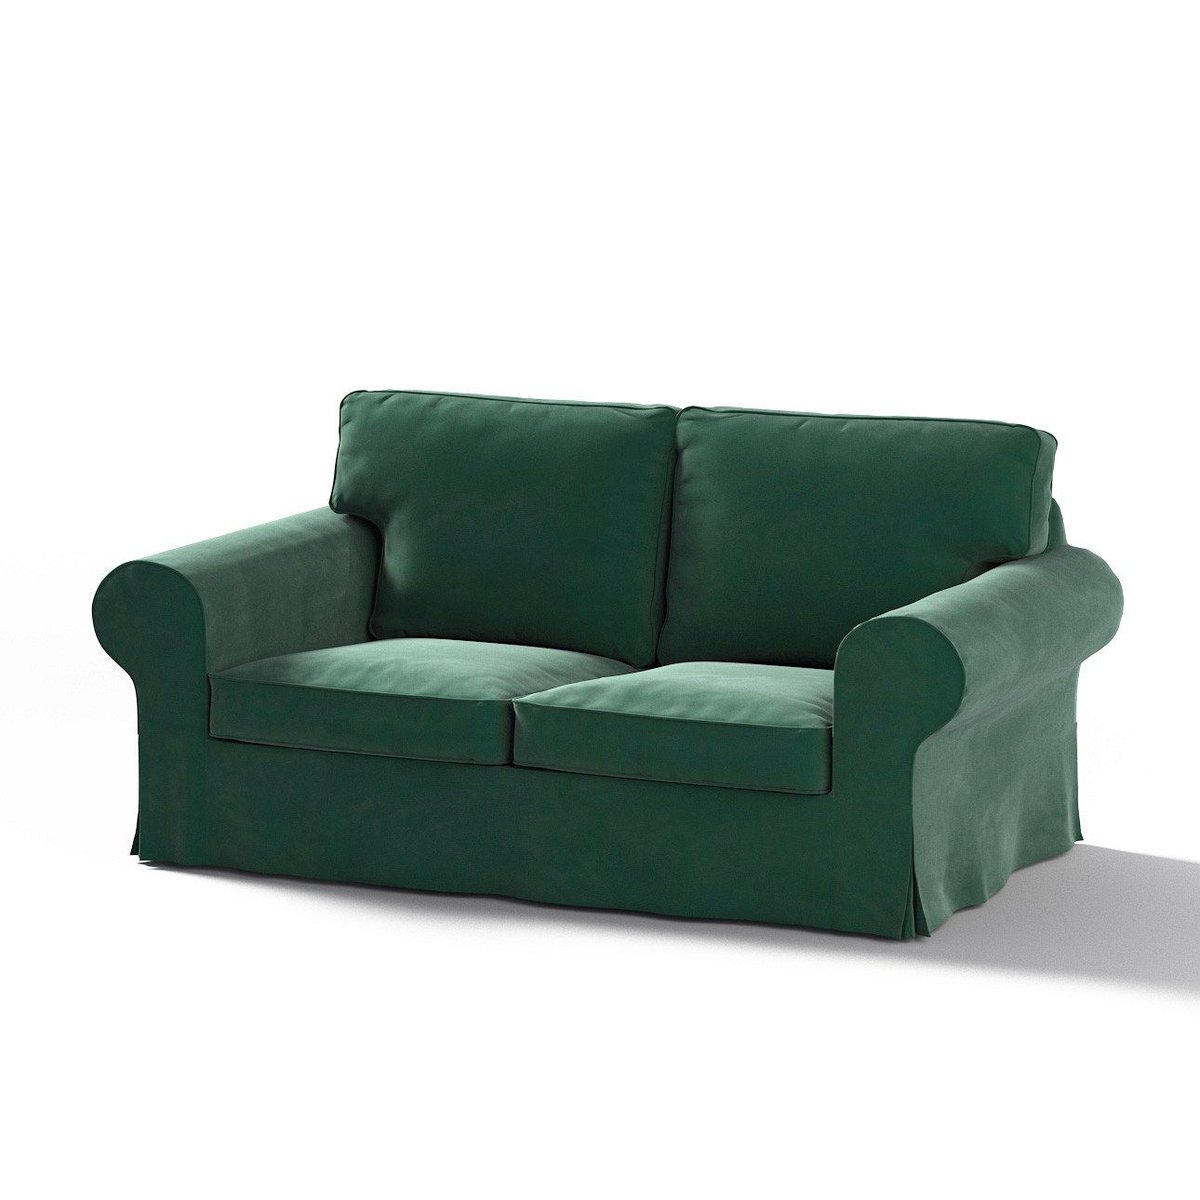 Dekoria Pokrowiec na sofę Ektorp 2-osobową rozkładaną model po 2012 ciemny zielony 200 x 90 x 73 cm Velvet 1016-704-25